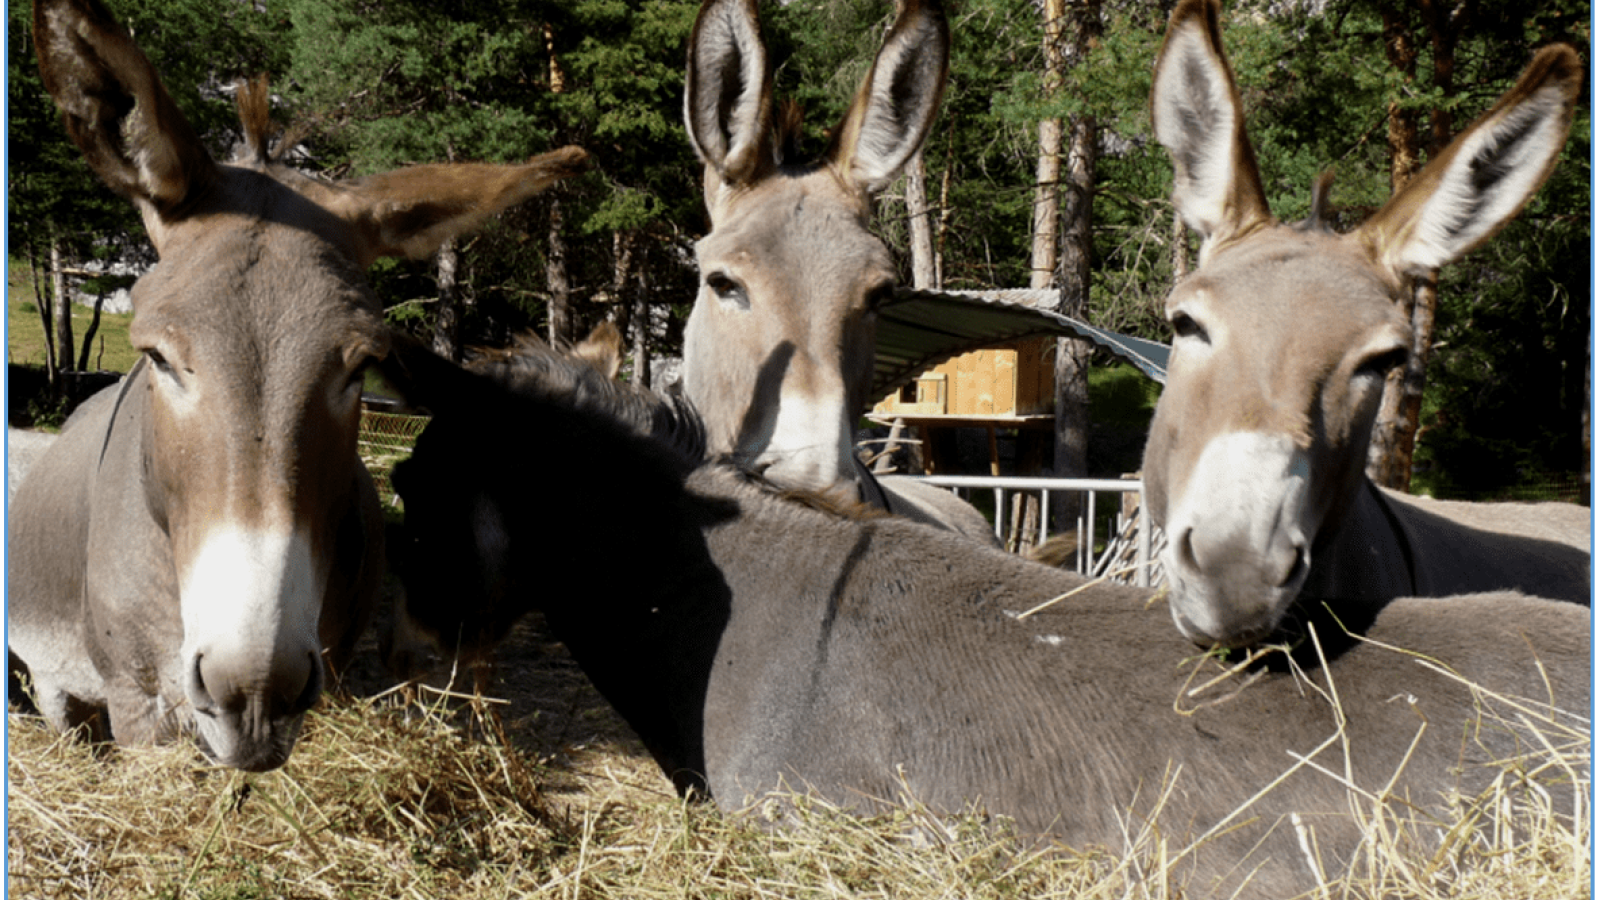 Donkey hire with Anes et Randonnées in Aussois